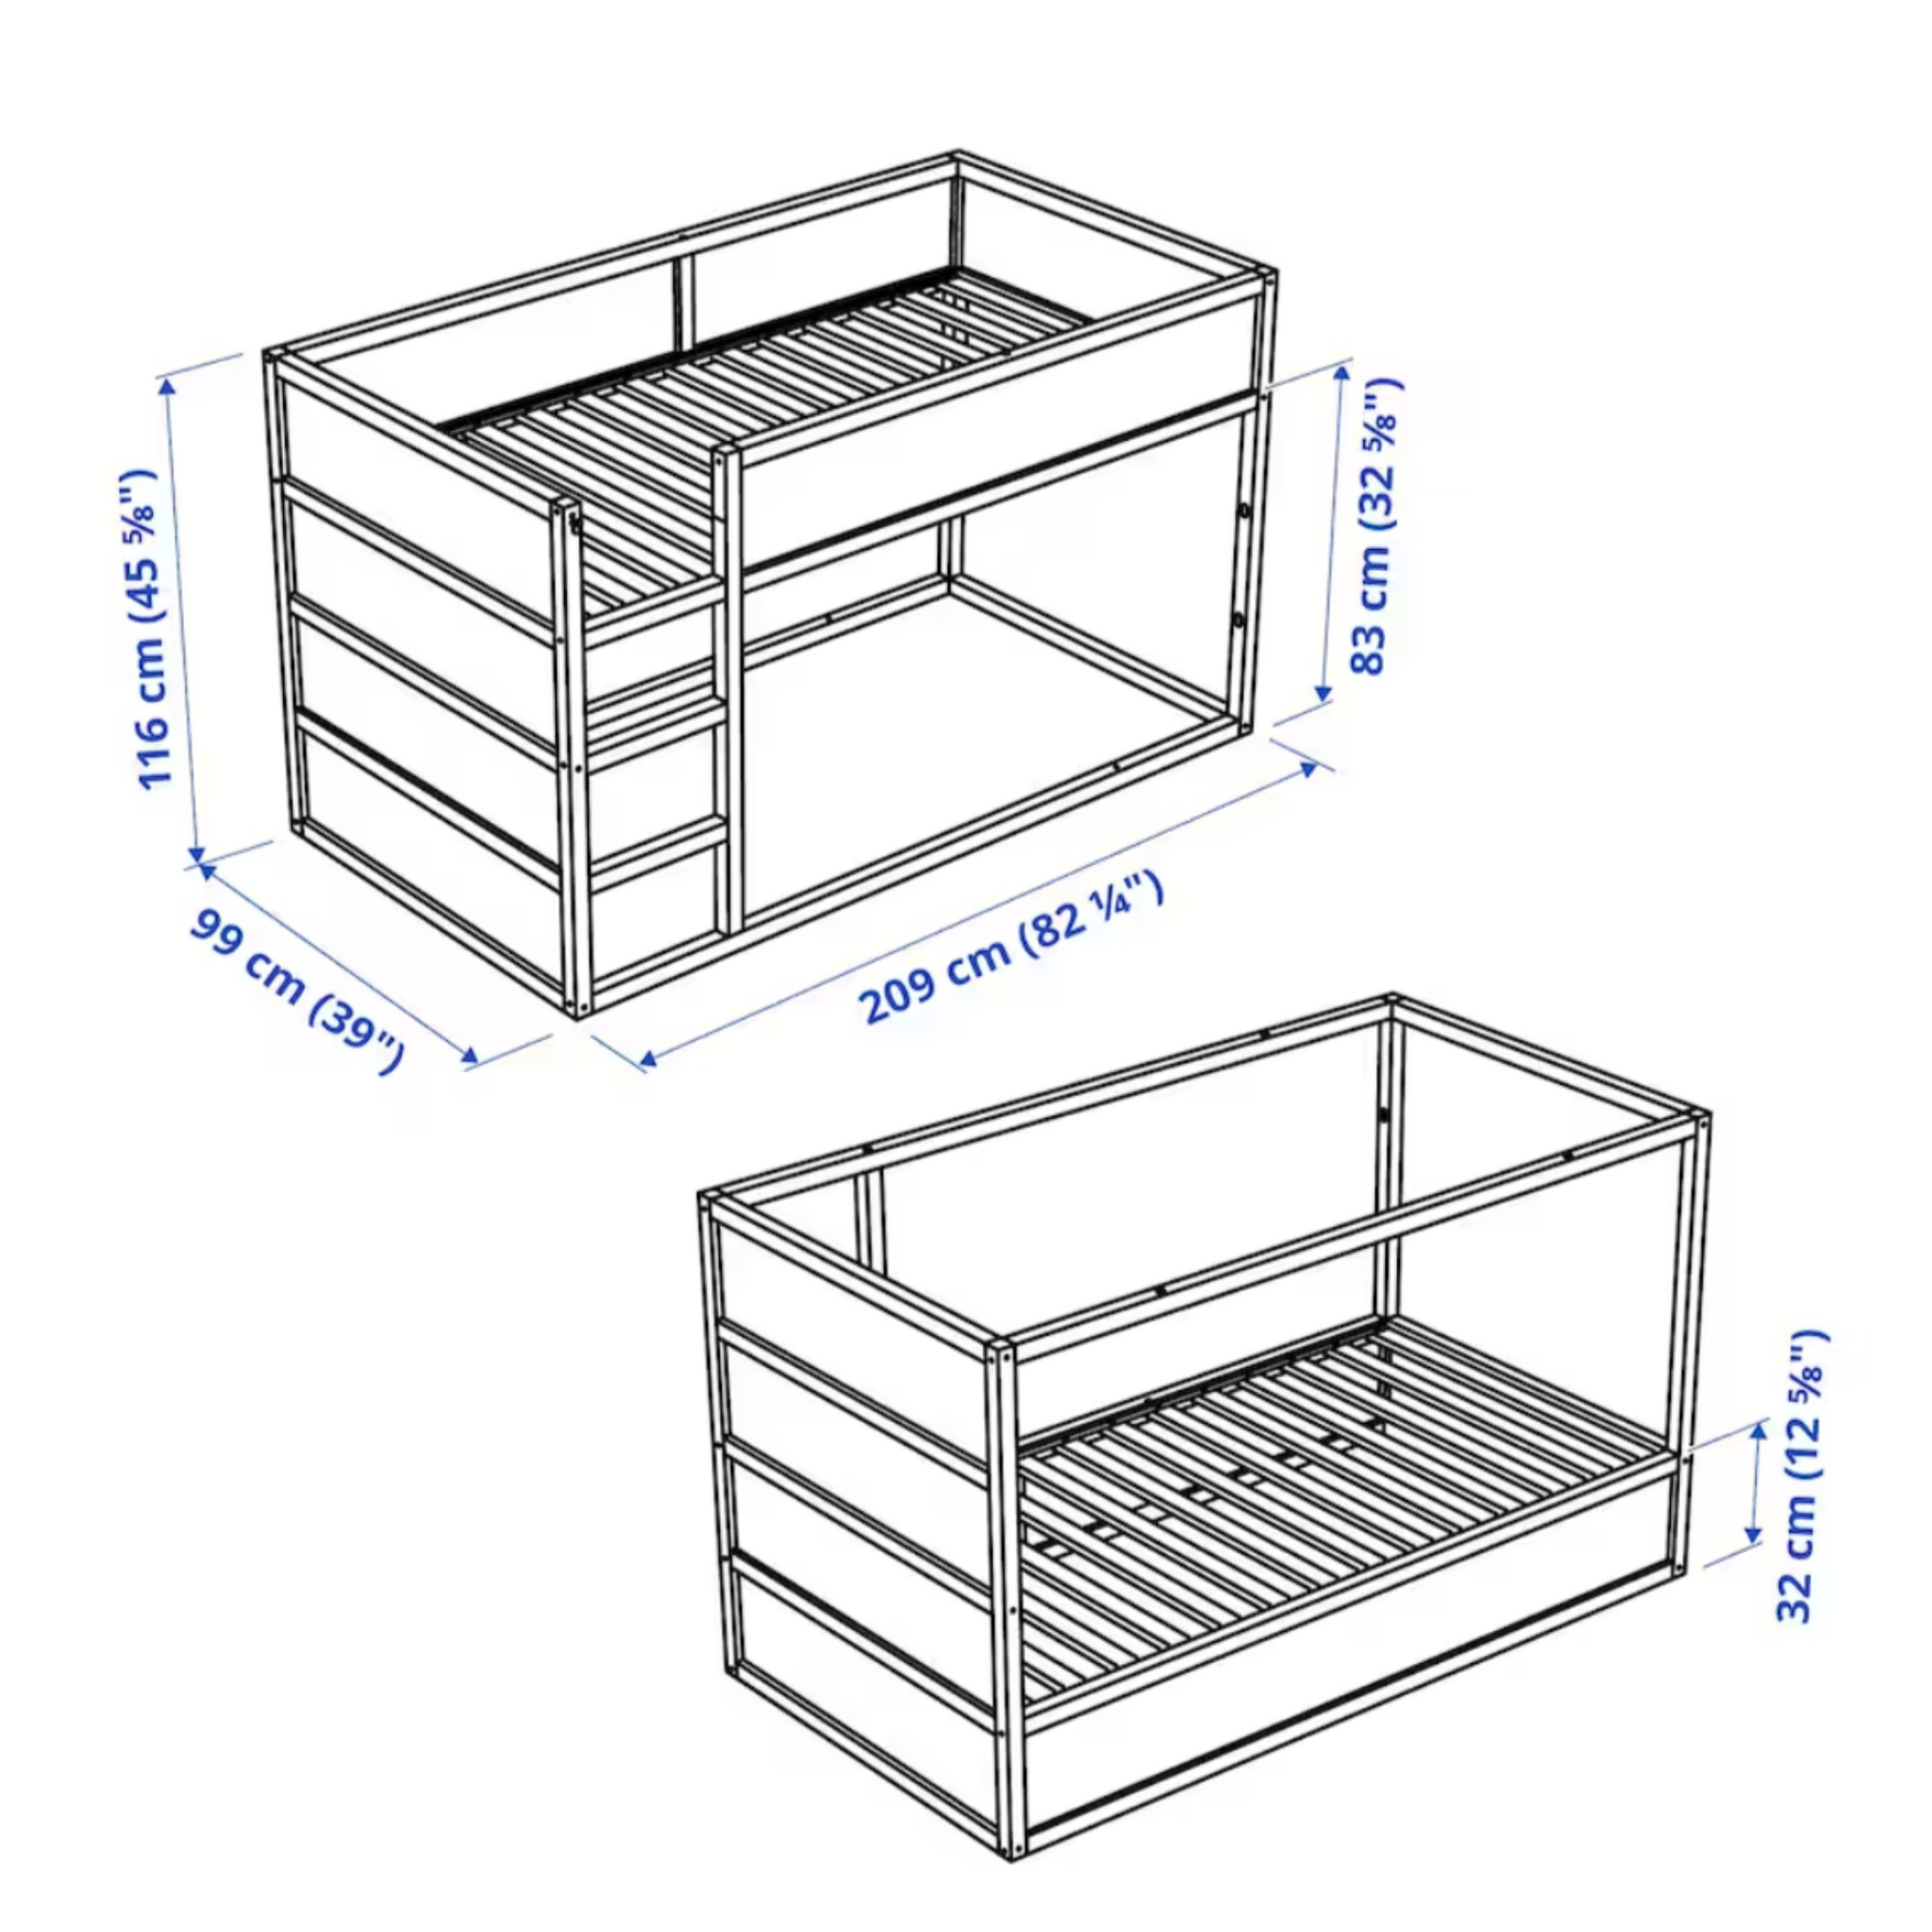 Ikea Kura Reversible Bed, 90x200cm, White / Pine (4247882203201)